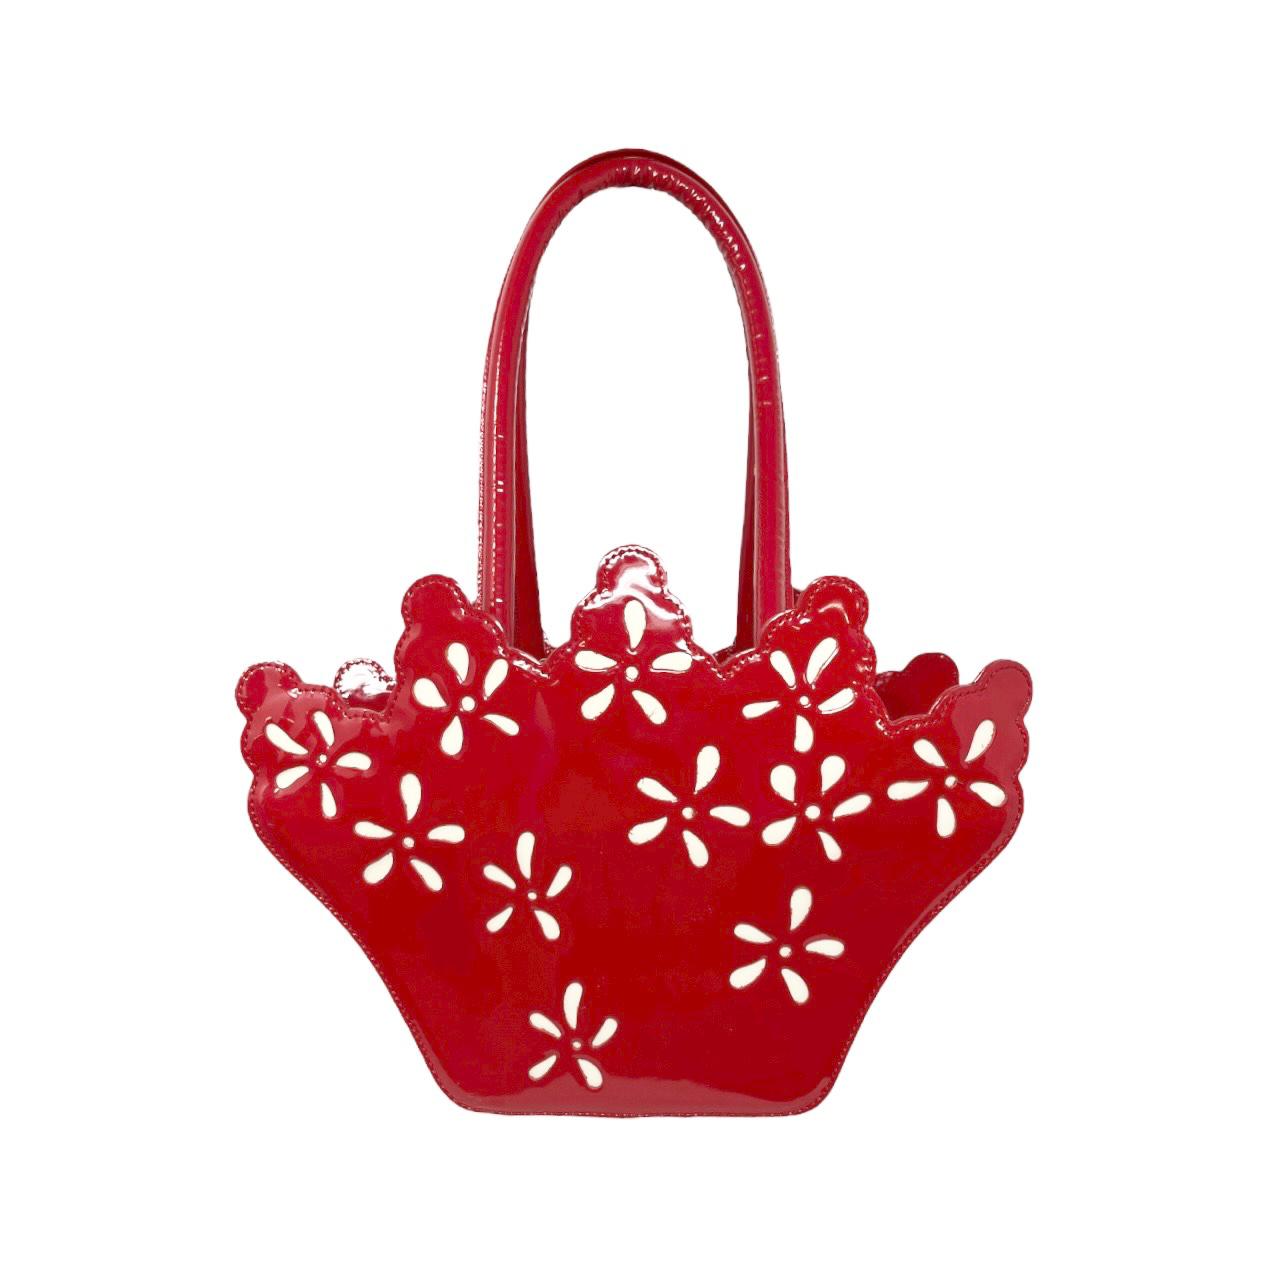 Vivienne Westwood Red Crown Bag